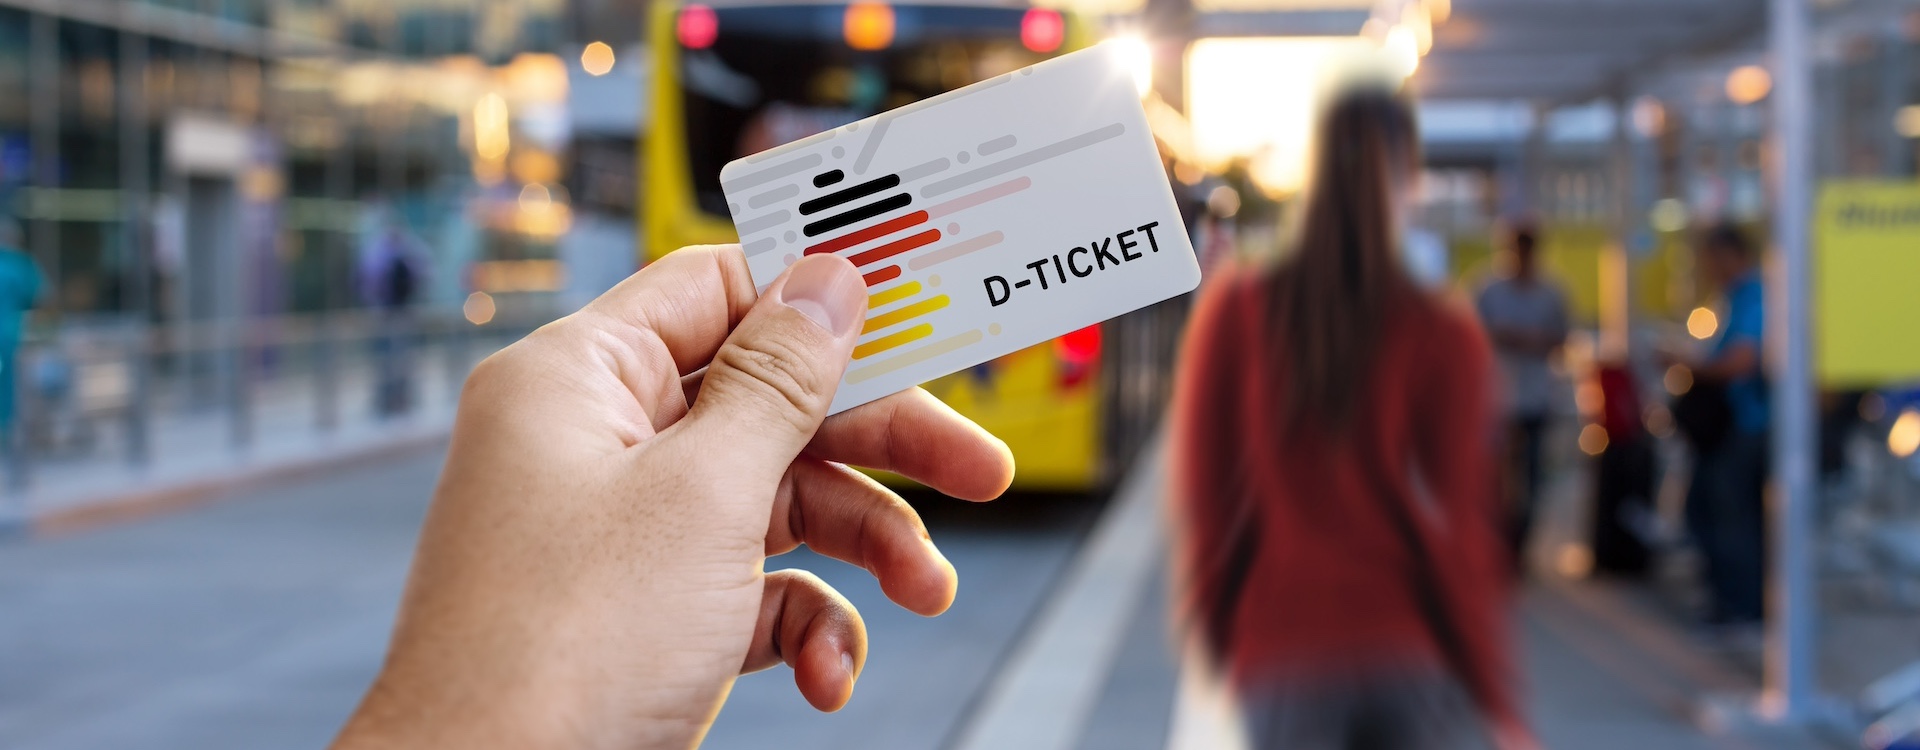 D-Ticket